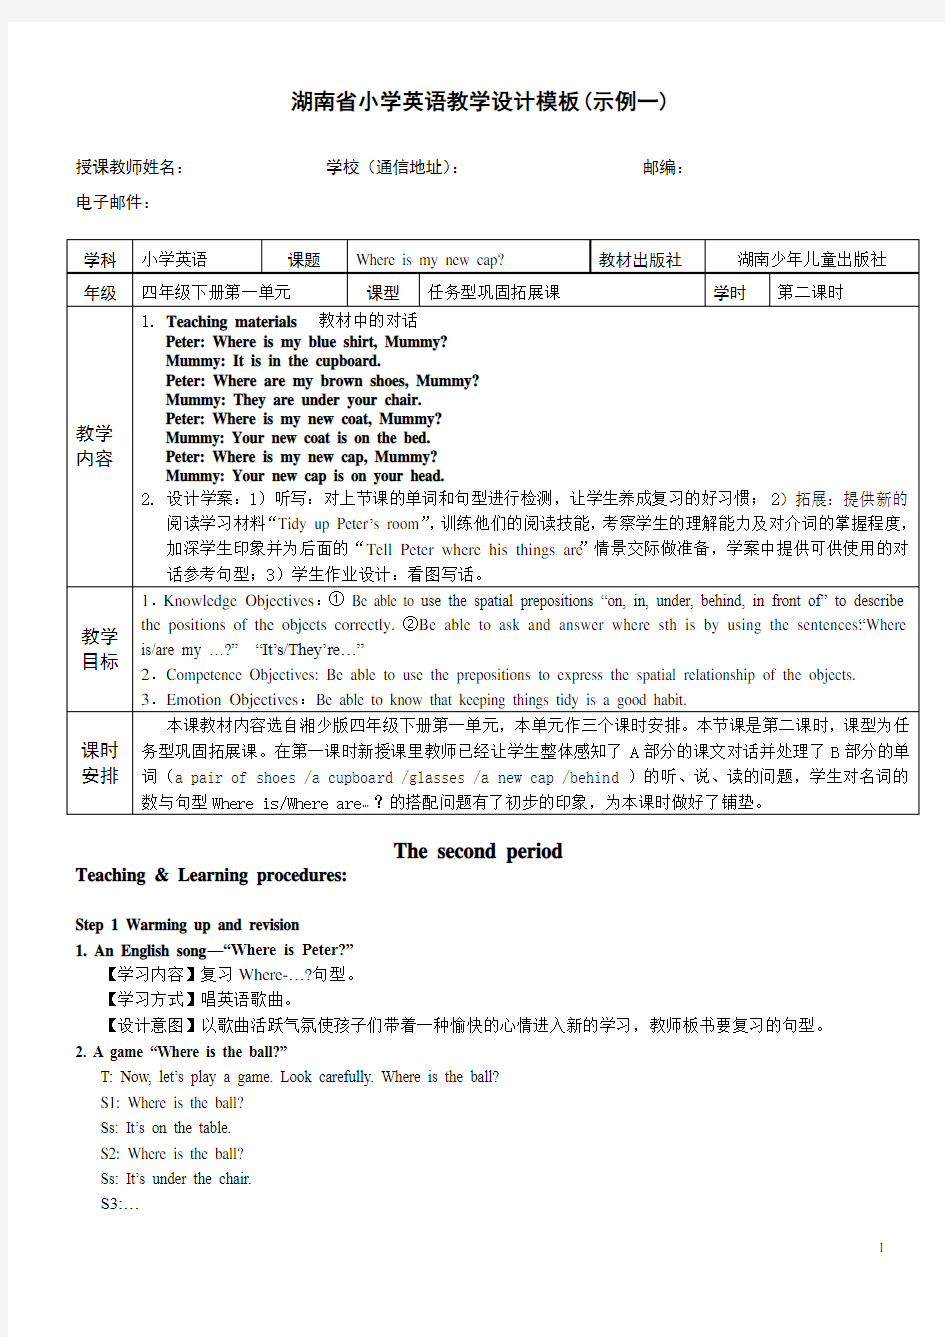 湖南省小学英语教学设计模板示例 (湘少版)